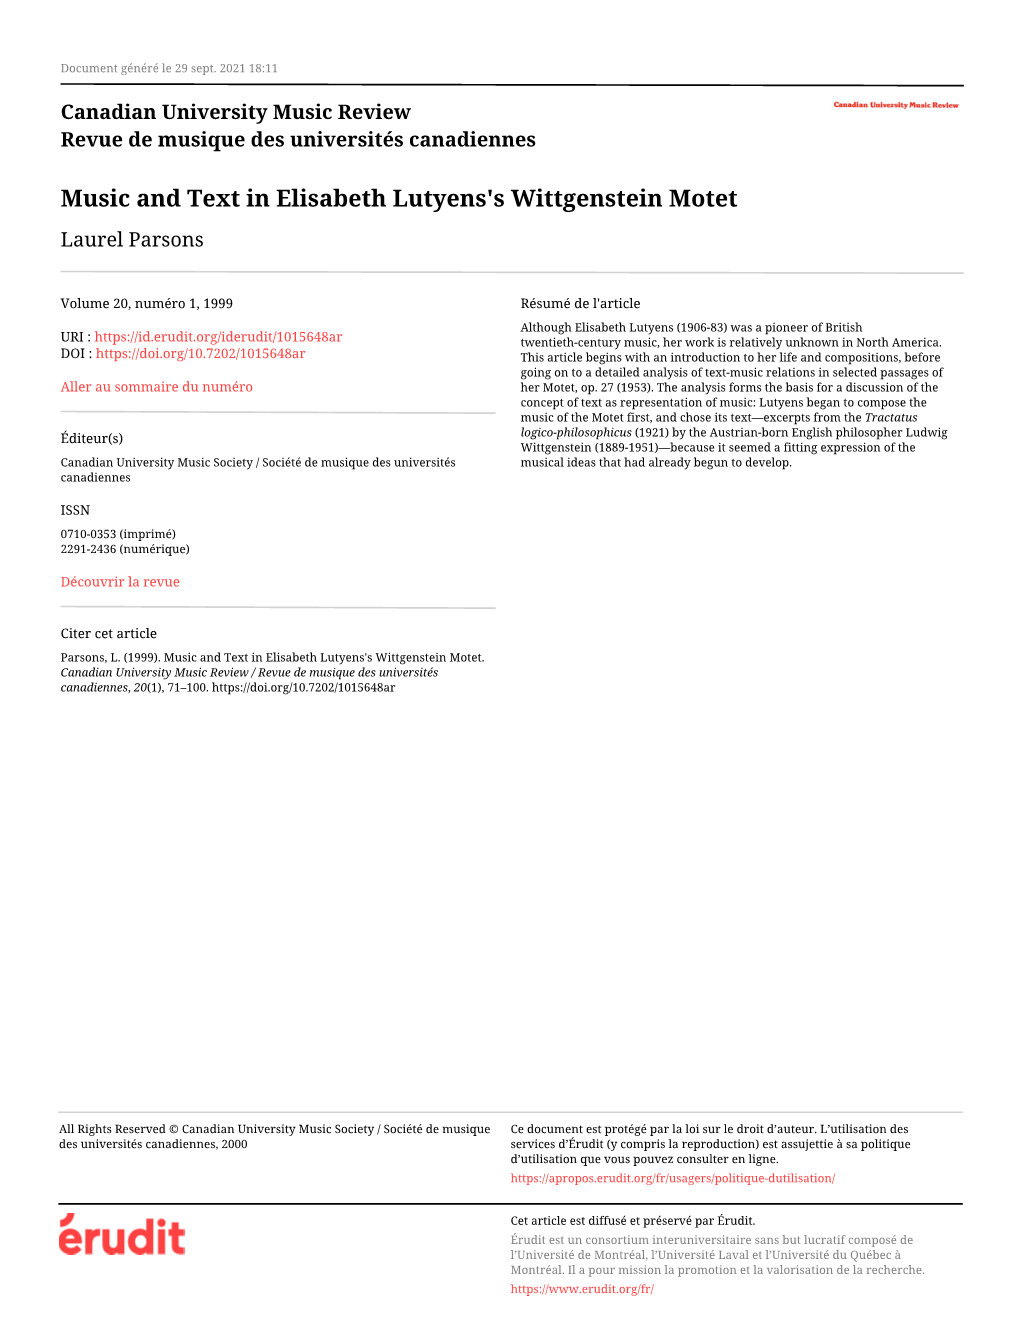 Music and Text in Elisabeth Lutyens's Wittgenstein Motet Laurel Parsons